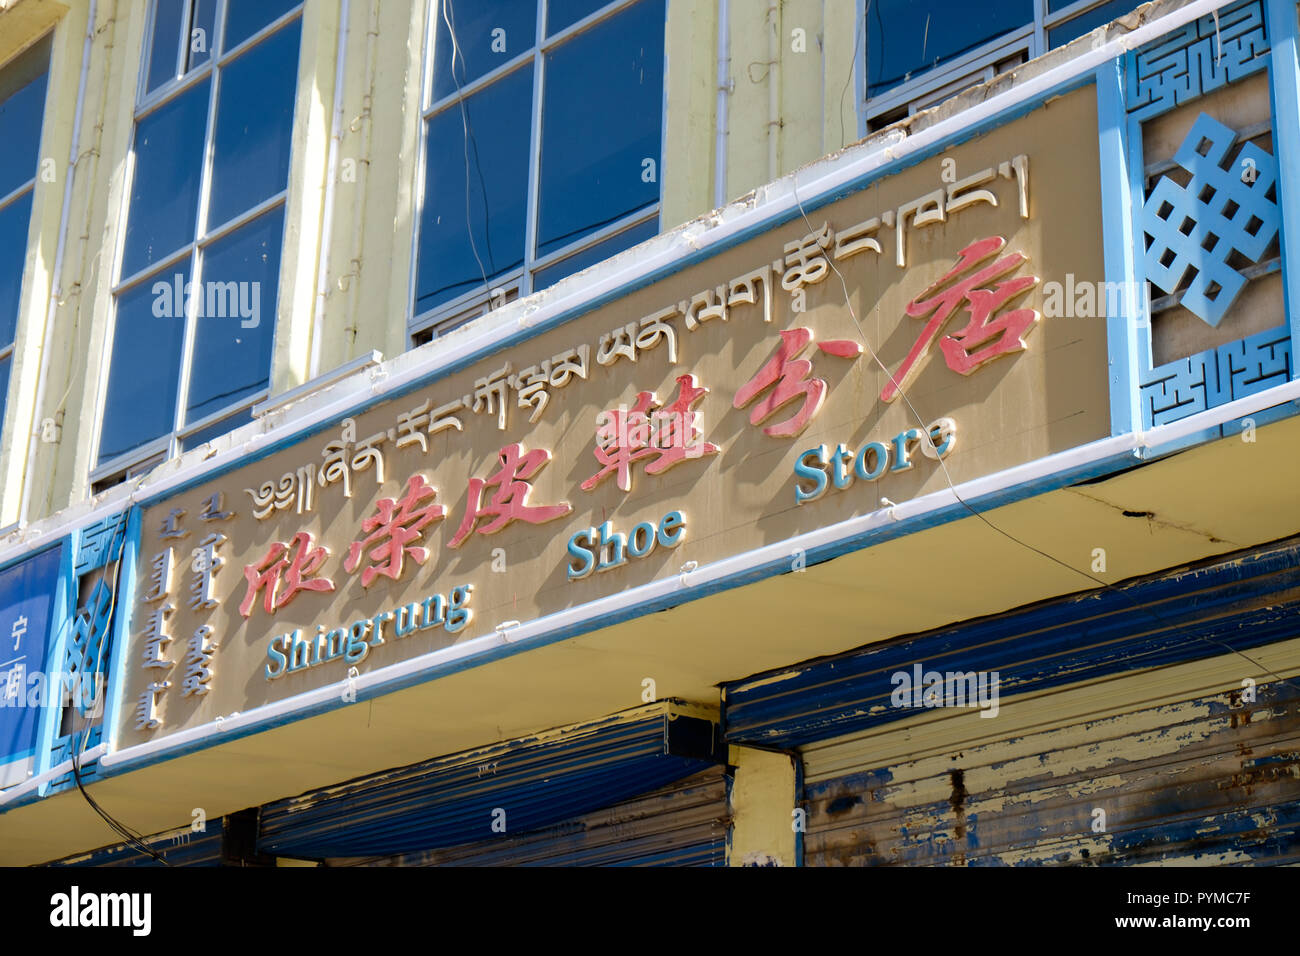 Shoe Shop anmelden Youganning Gemeinschaft, Henan, Huangnan, Qinghai, China Stockfoto